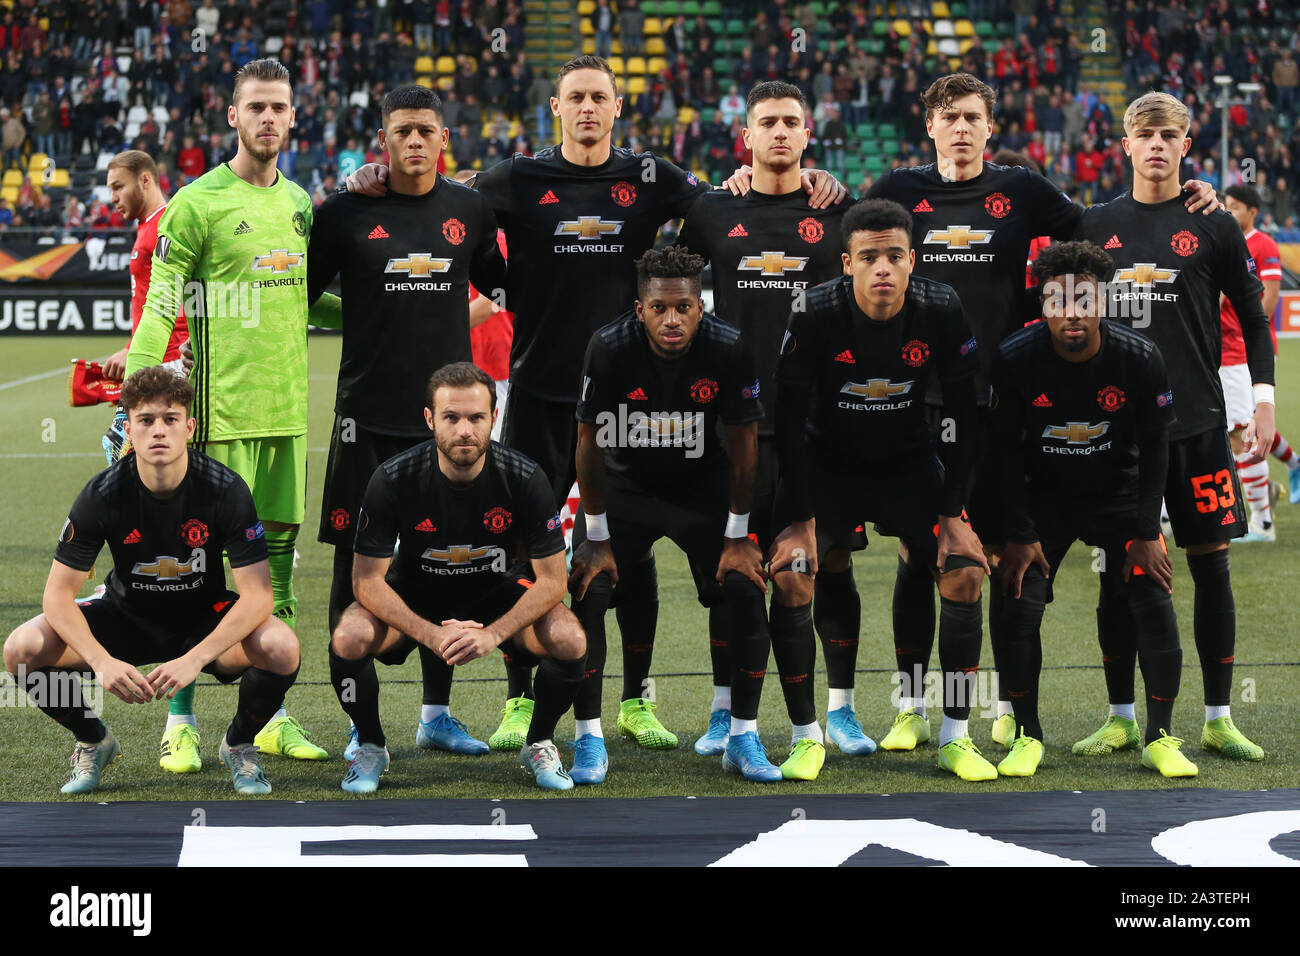 La Haye, Pays-Bas - 3 octobre 2019 : Manchester United squad photographié au cours de la 2019-2020 UEFA Europa League Group L match. Banque D'Images